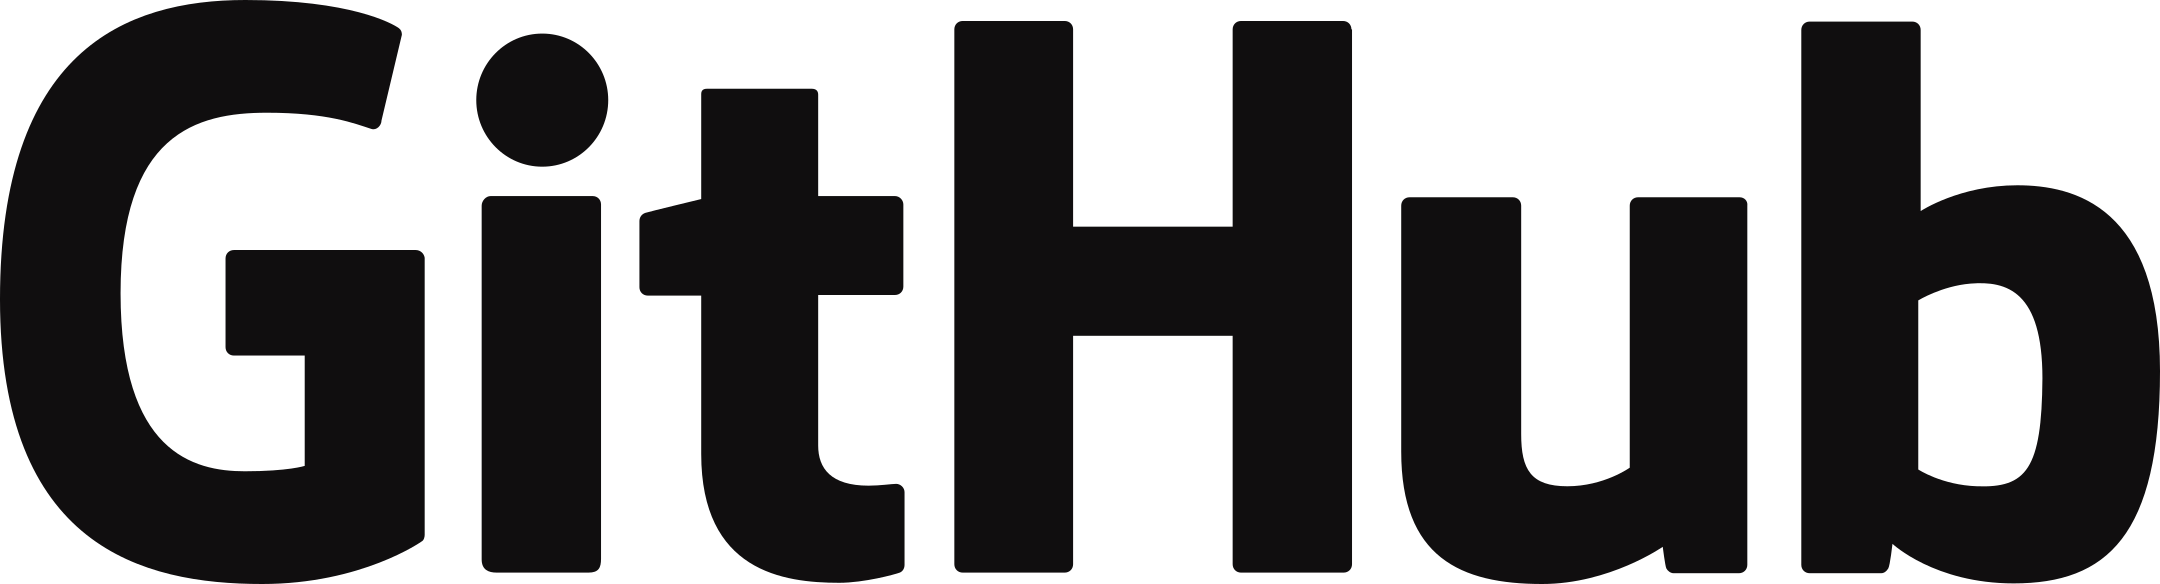 github-logo-3.png